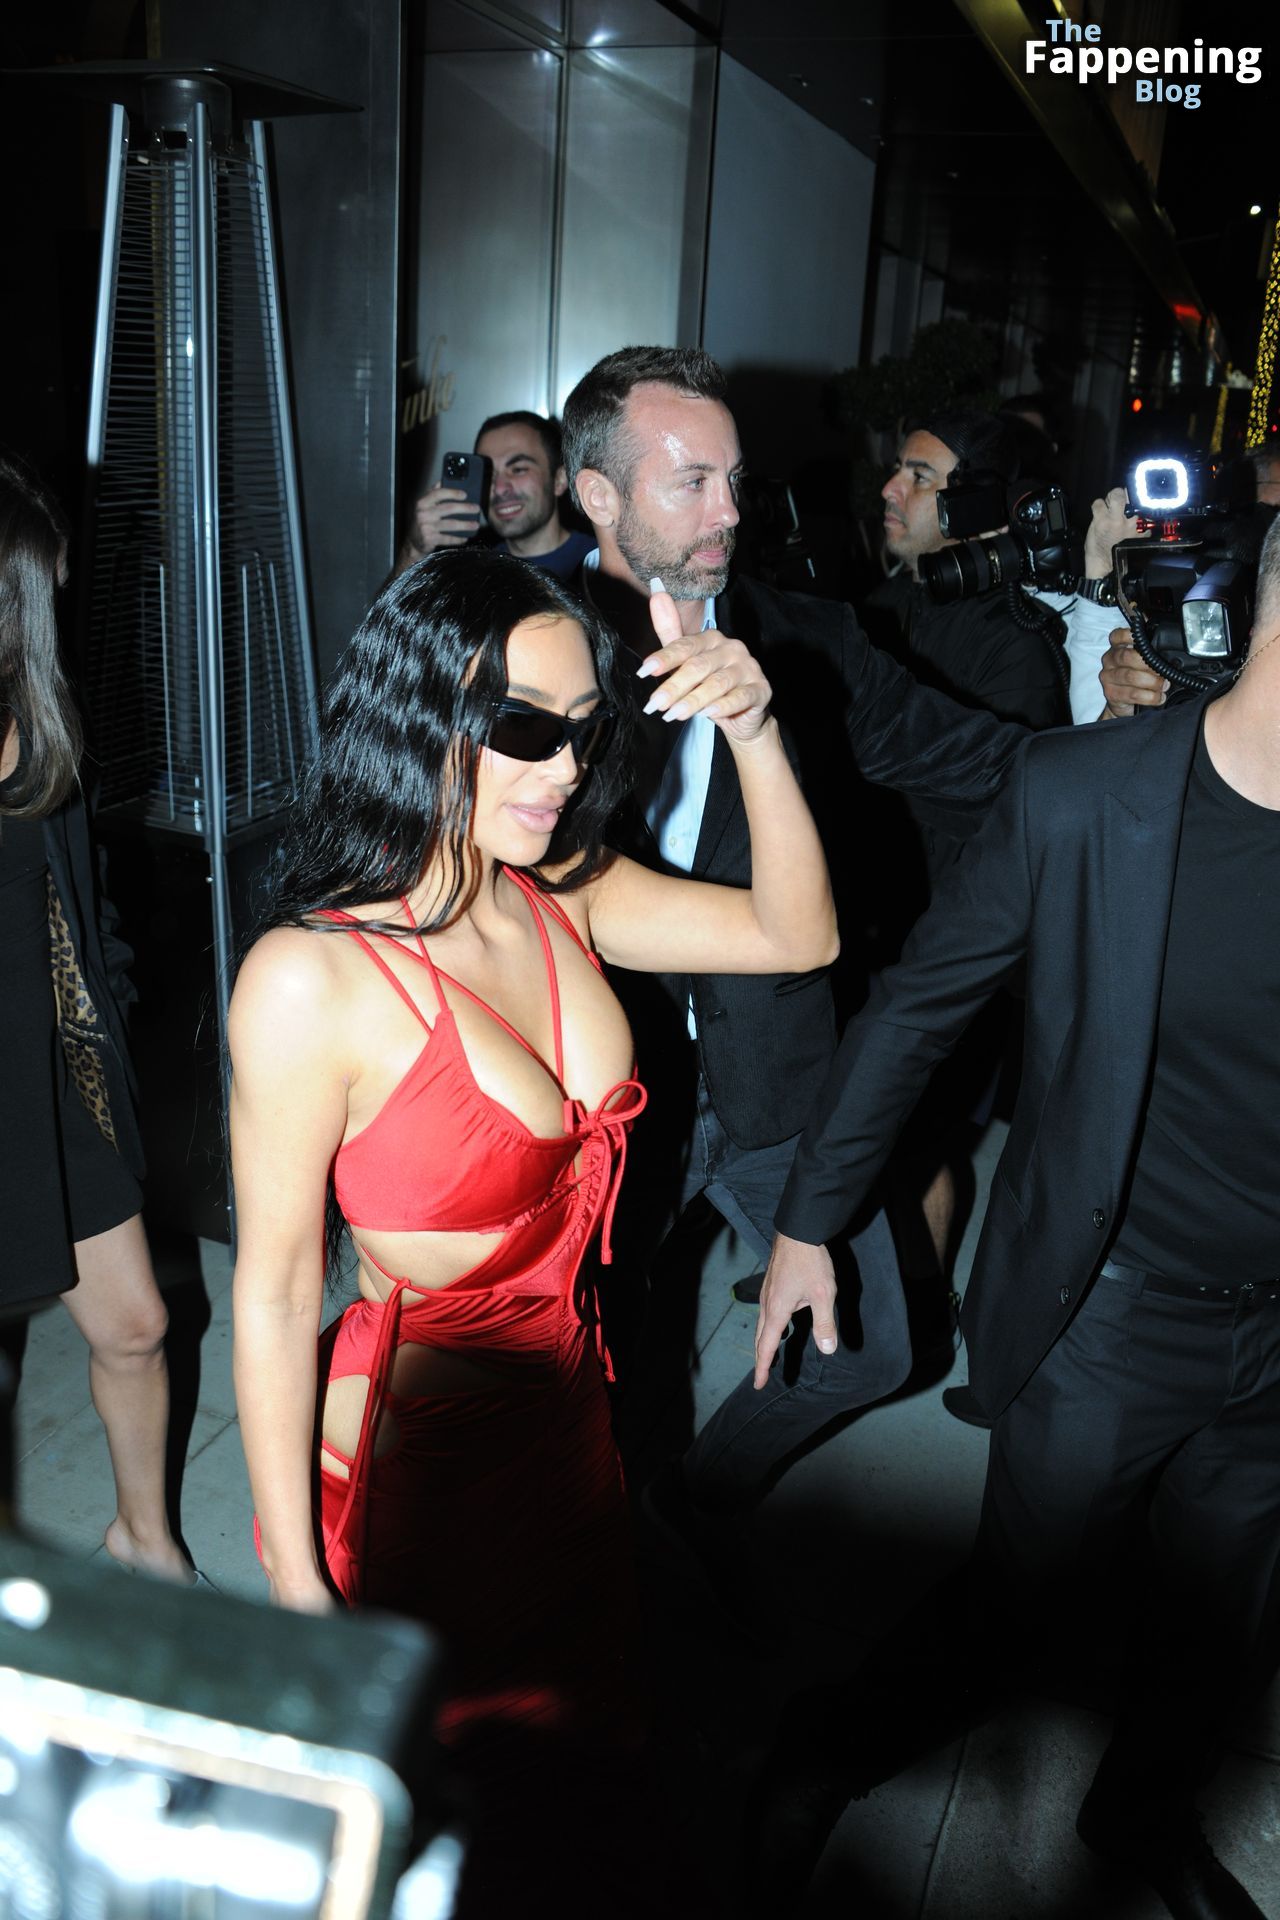 Kim-Kardashian-Sexy-124-The-Fappening-Blog.jpg